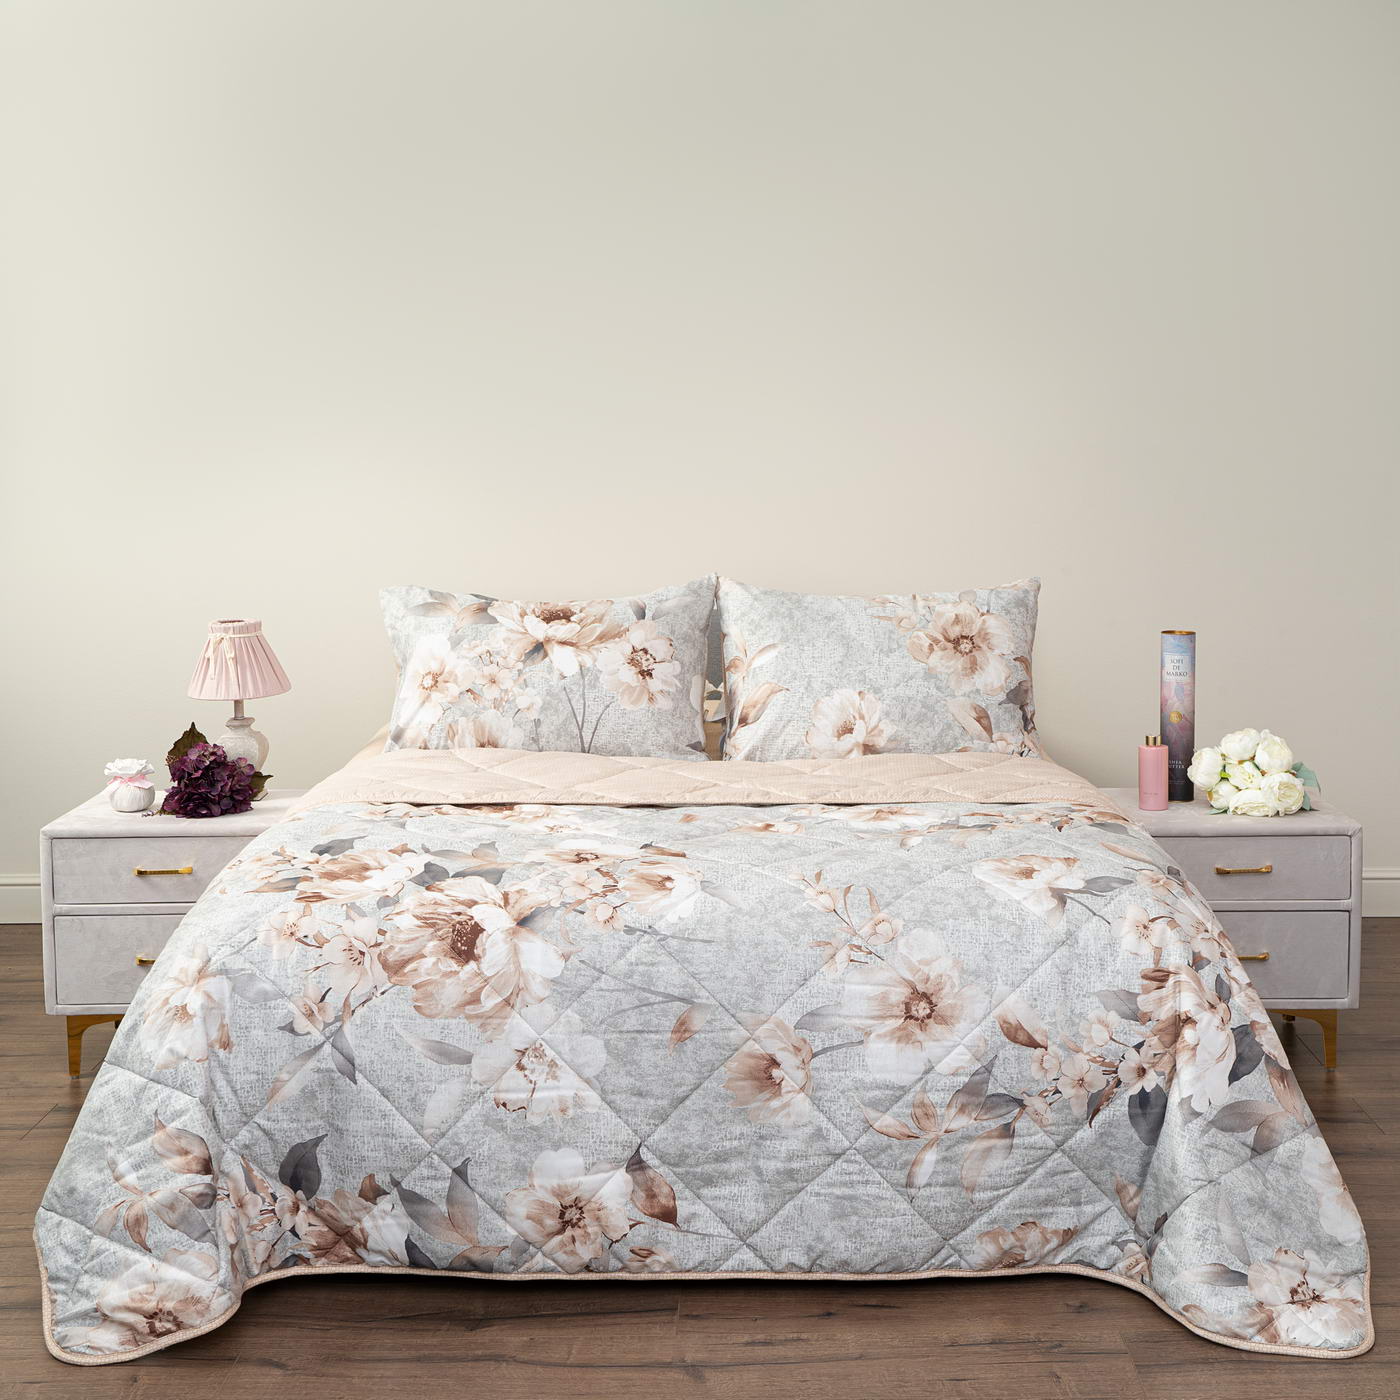 Постельное белье с одеялом-покрывалом Массимо цвет: серый, персиковый (семейное)